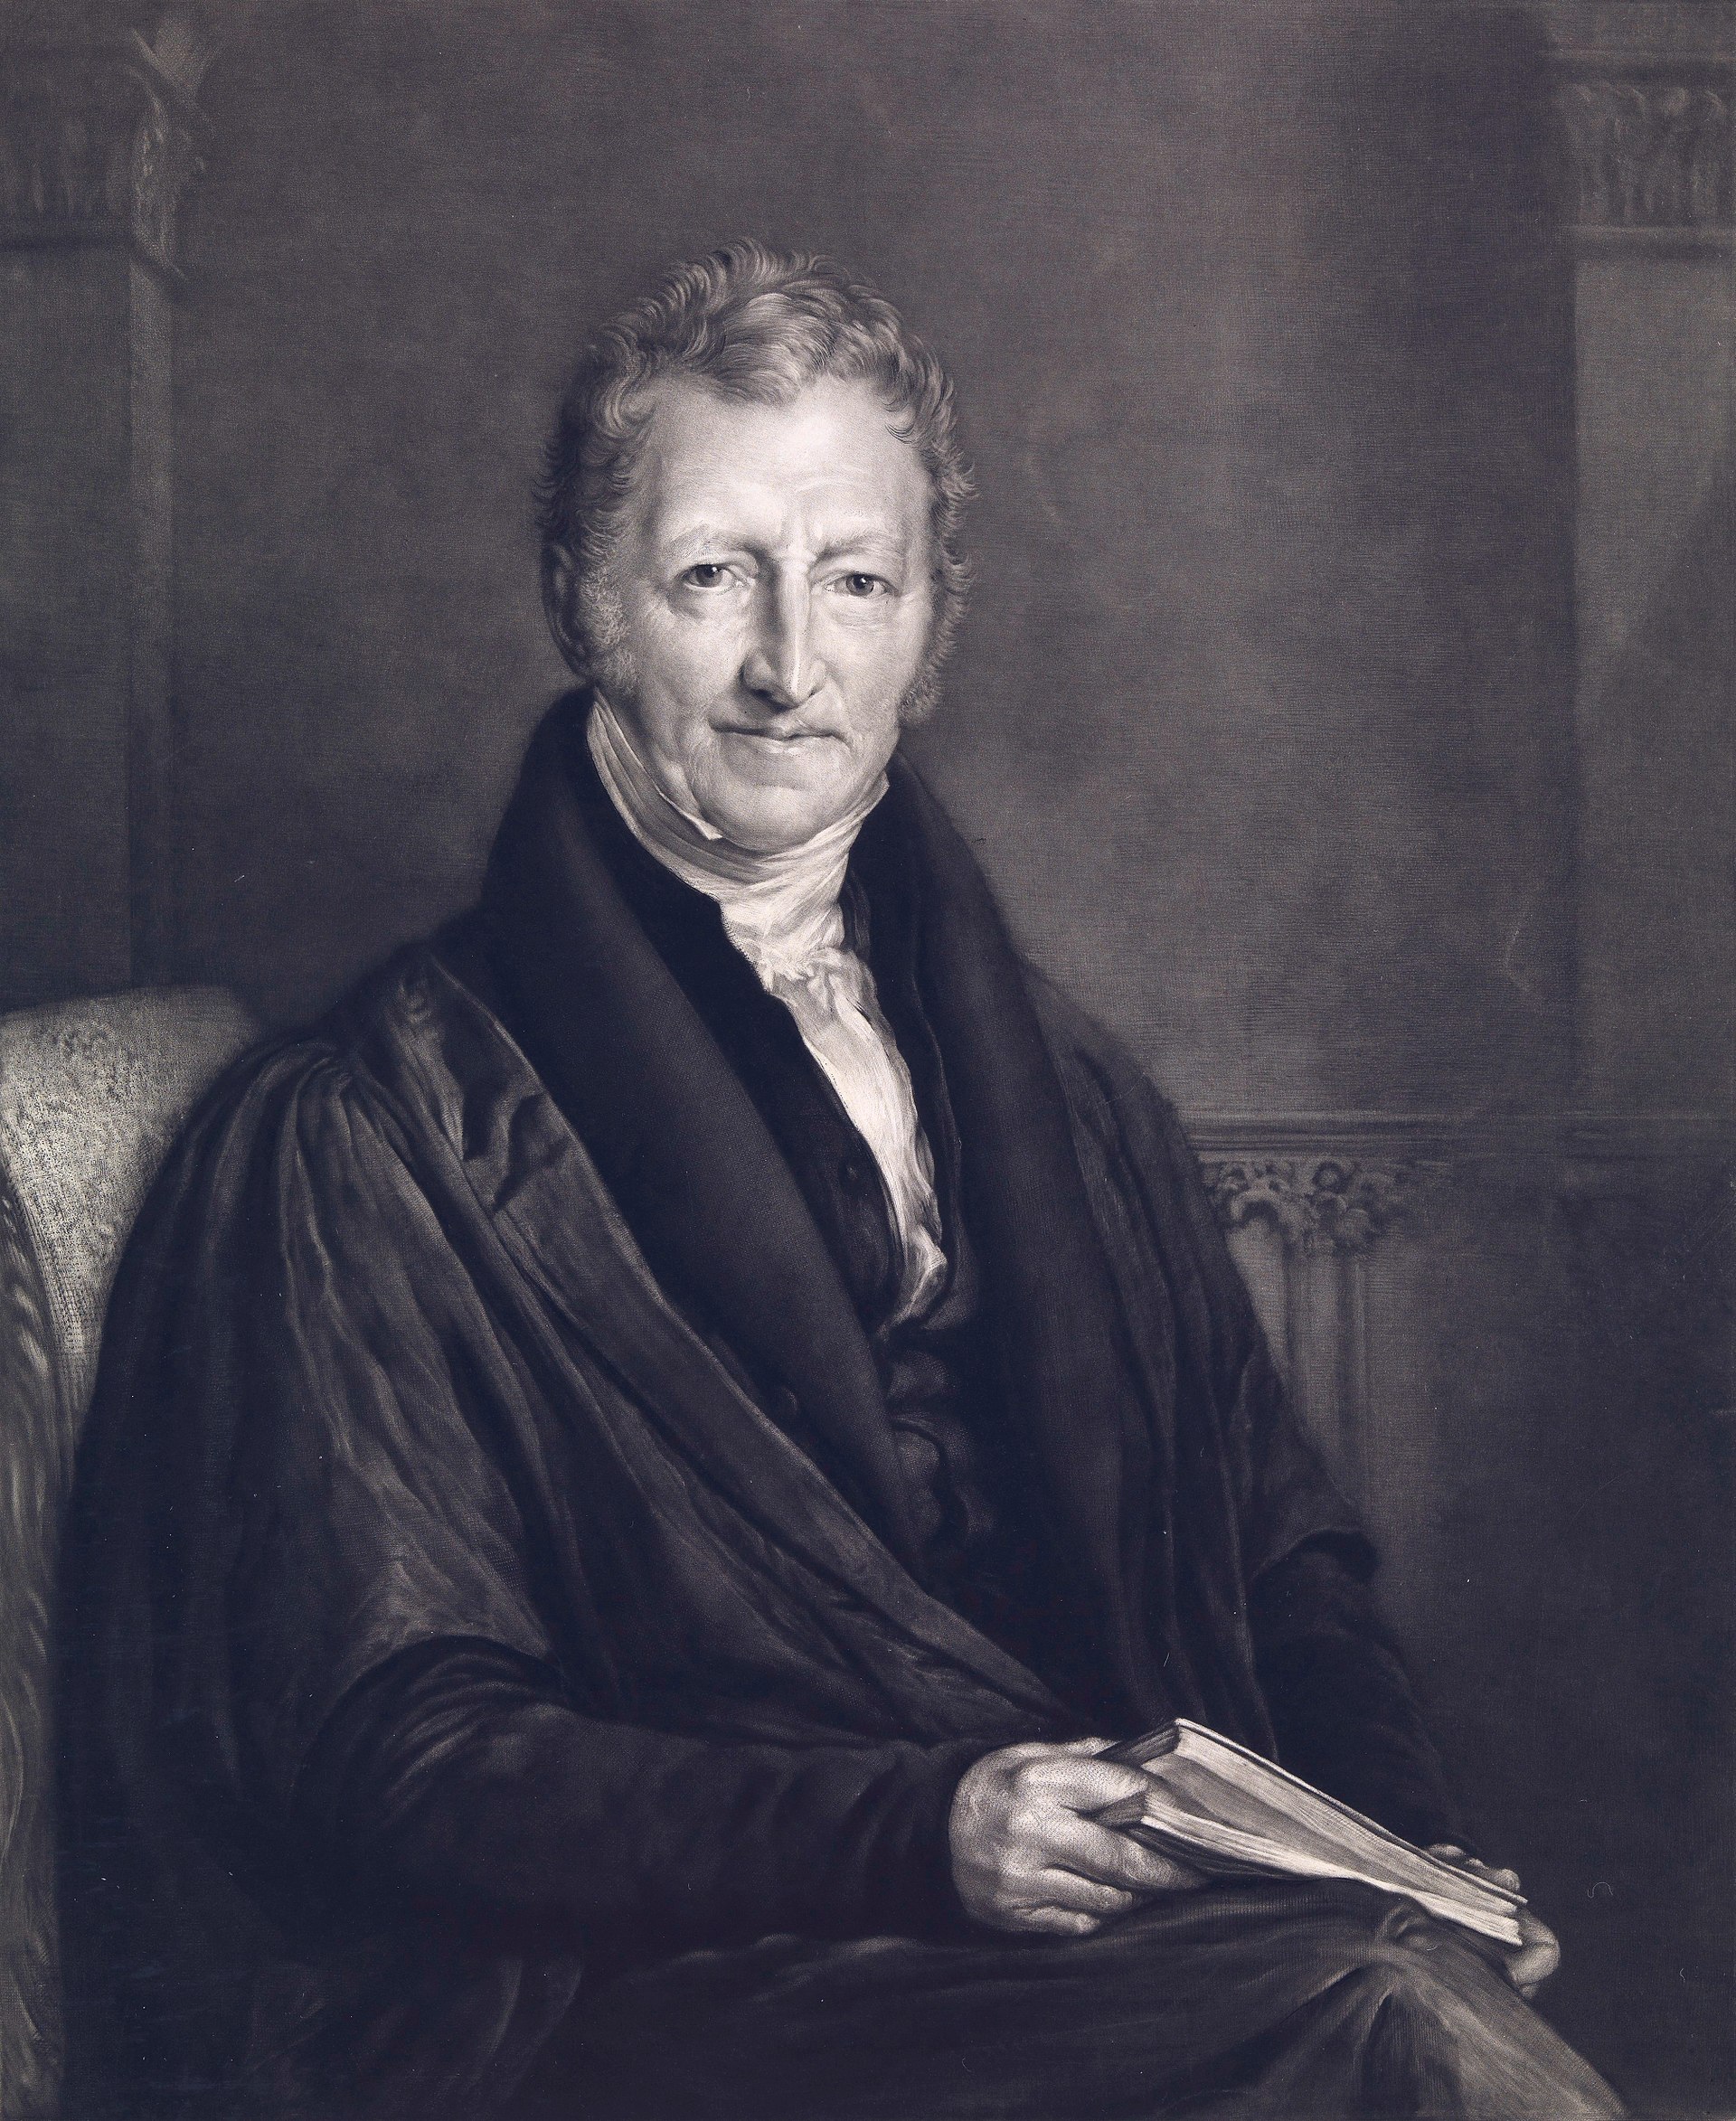 Retrato de Malthus